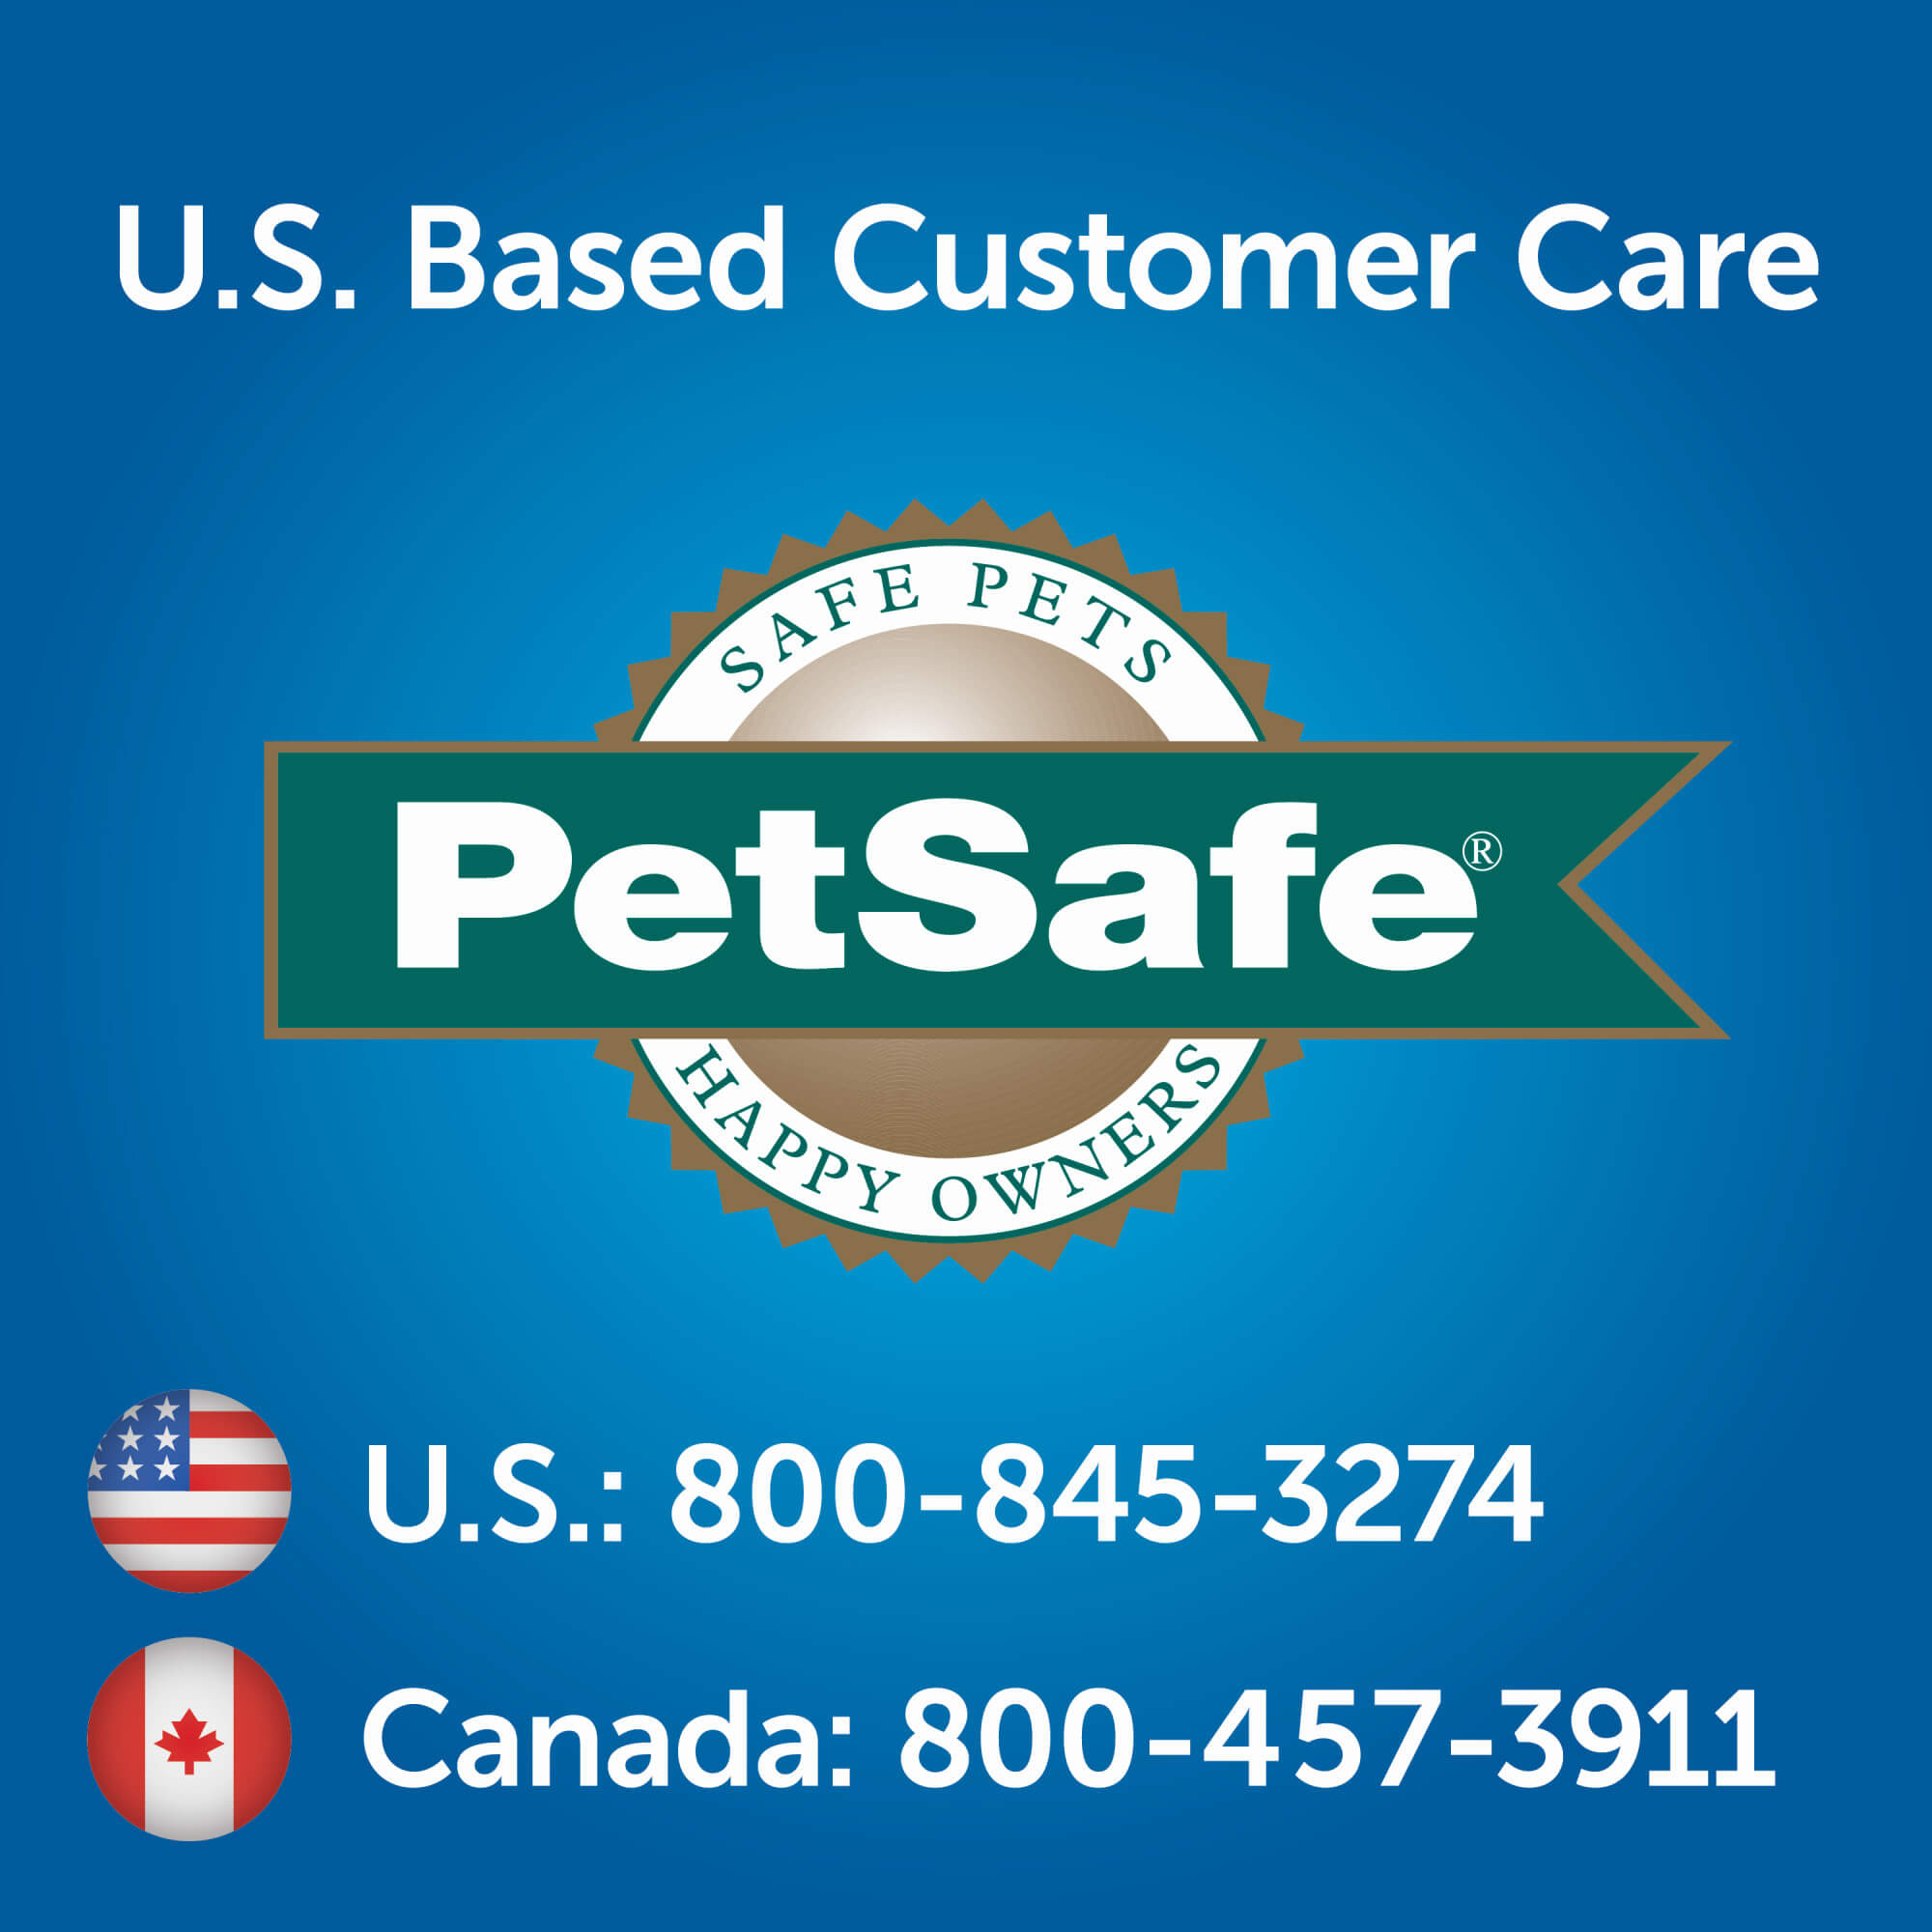 U.S based customer care